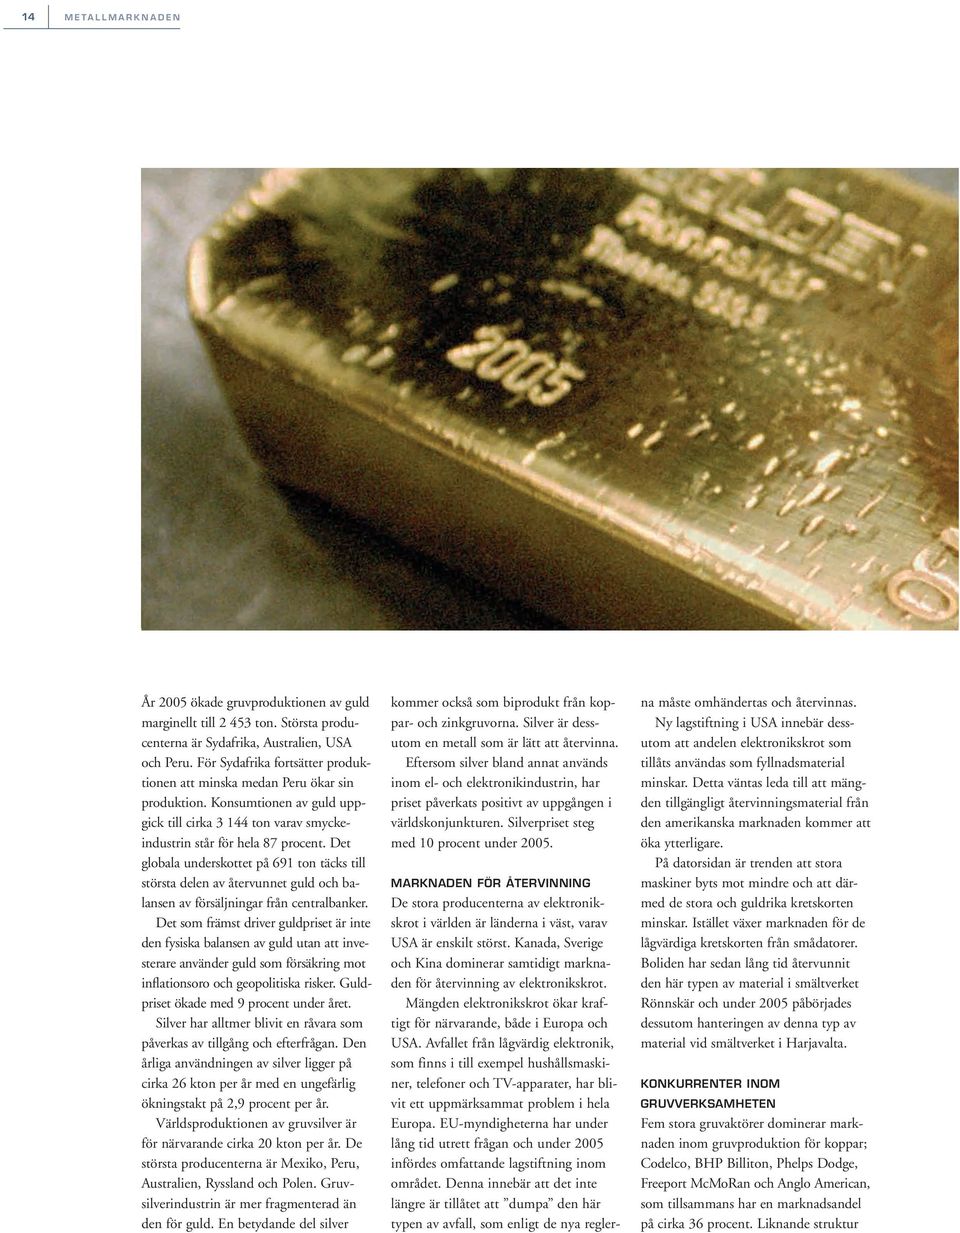 Det globala underskottet på 691 ton täcks till största delen av återvunnet guld och balansen av försäljningar från centralbanker.